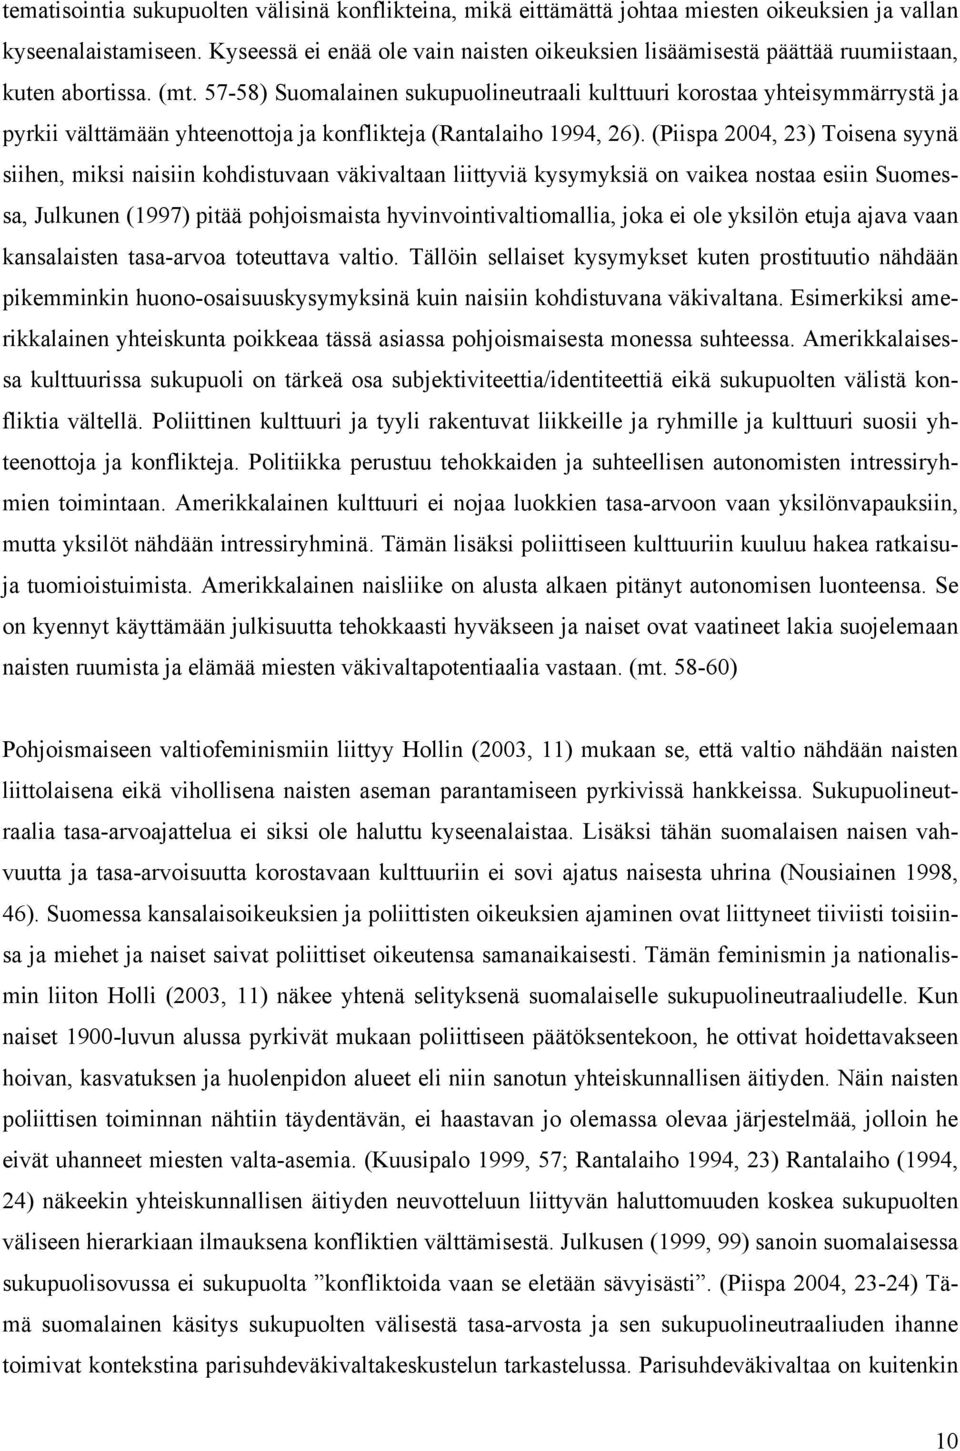 57-58) Suomalainen sukupuolineutraali kulttuuri korostaa yhteisymmärrystä ja pyrkii välttämään yhteenottoja ja konflikteja (Rantalaiho 1994, 26).